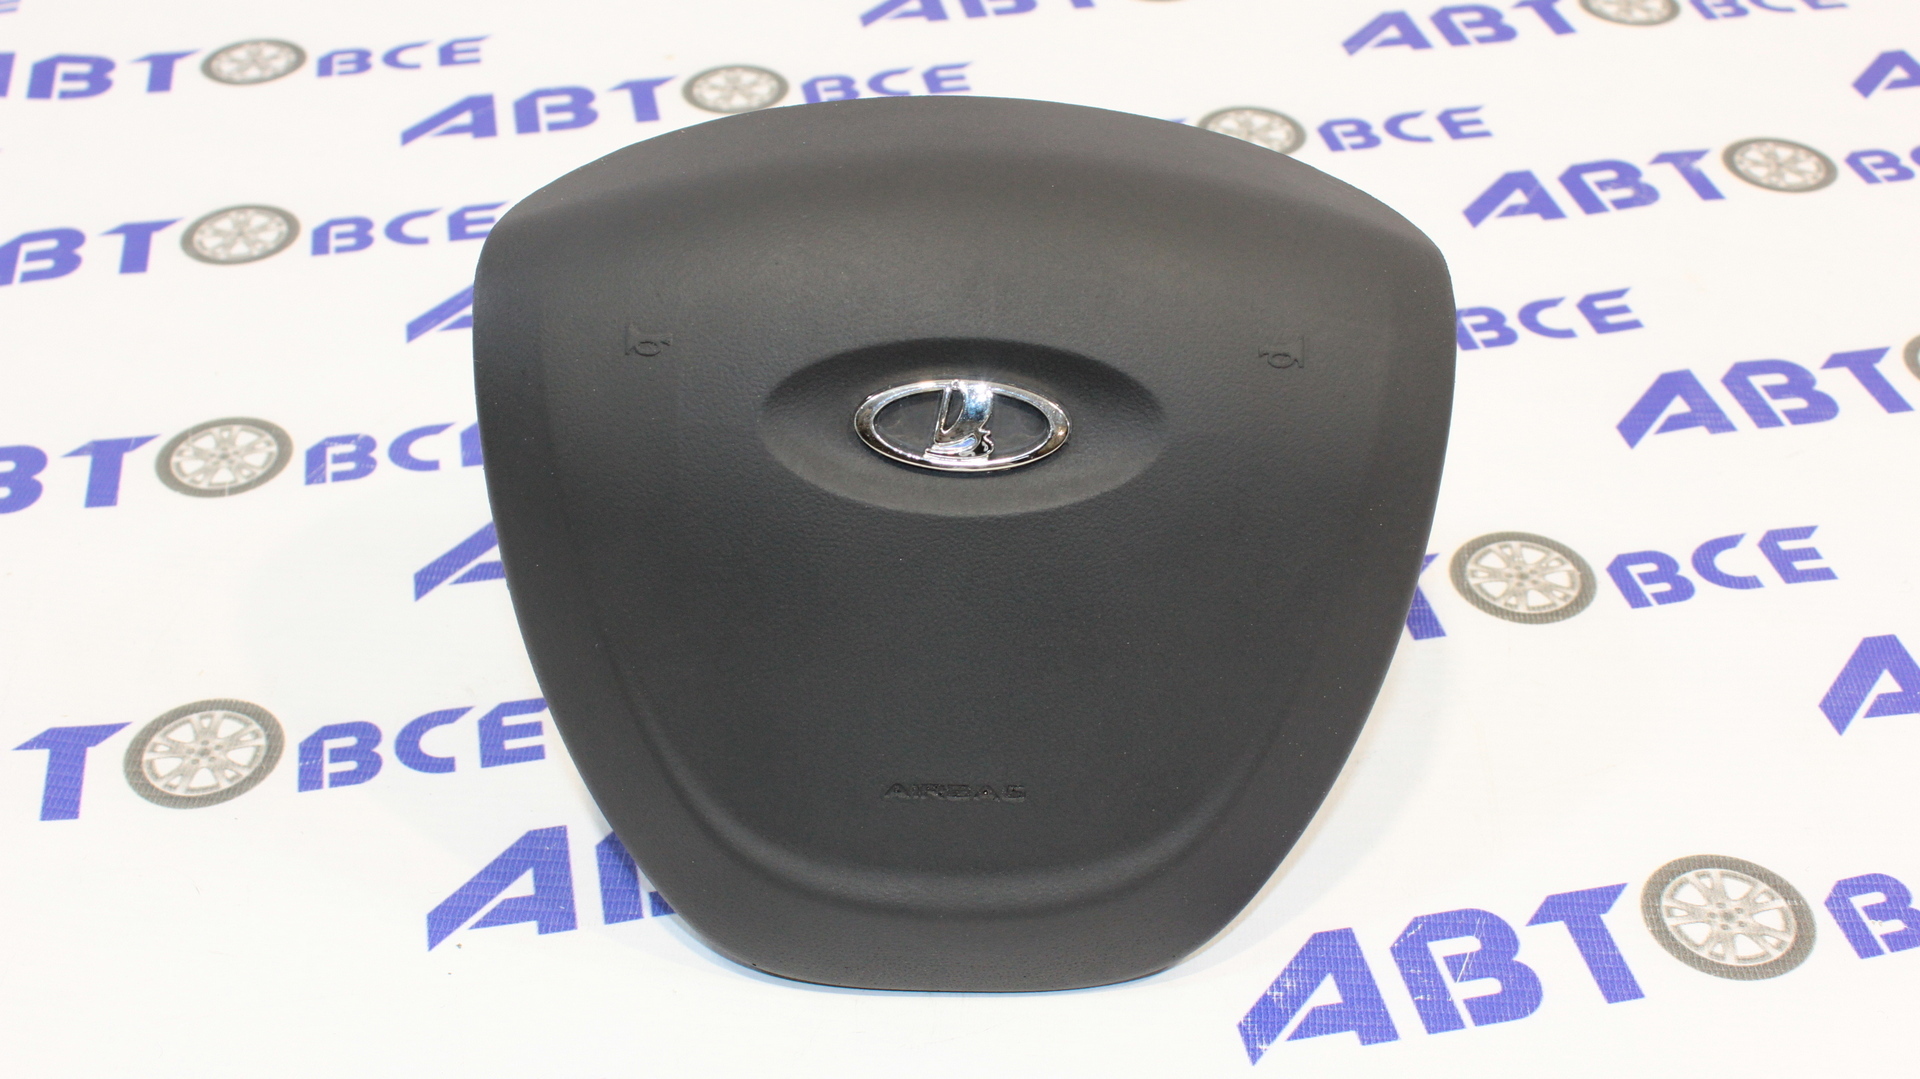 Крышка руля - кнопка сигнала - заглушка муляж Airbag (в руль) ВАЗ-2190-2170 AIRBAG